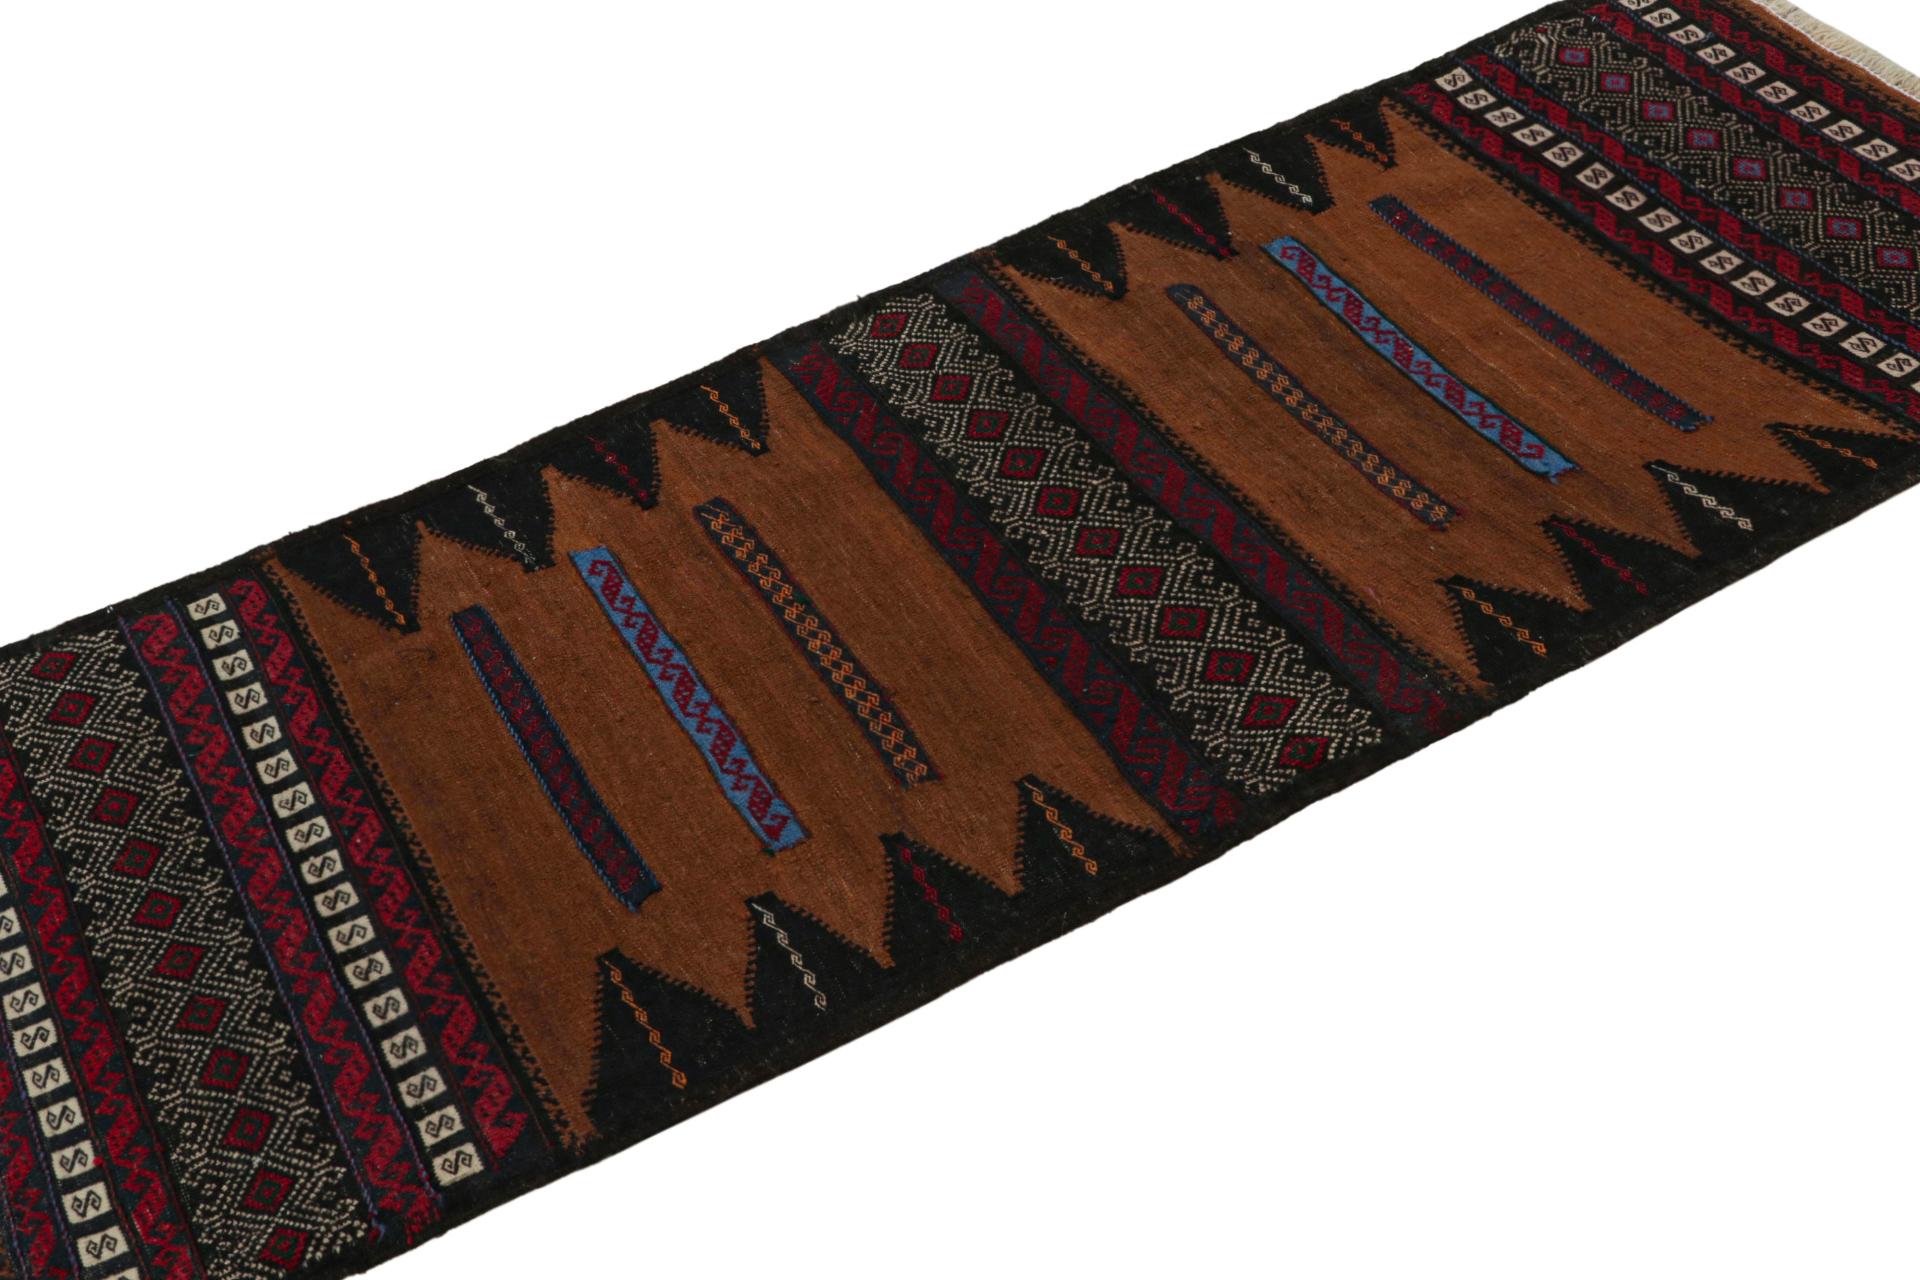 Dieser handgewebte afghanische 2x5-Stammes-Kilim-Läufer aus Wolle (ca. 1950-1960) ist ein exquisites Stück aus dem Stammesleben, das im Nomadenalltag oft als Tischdecke verwendet wurde, ähnlich wie die persischen Sofreh-Kilims. 

Über das Design: